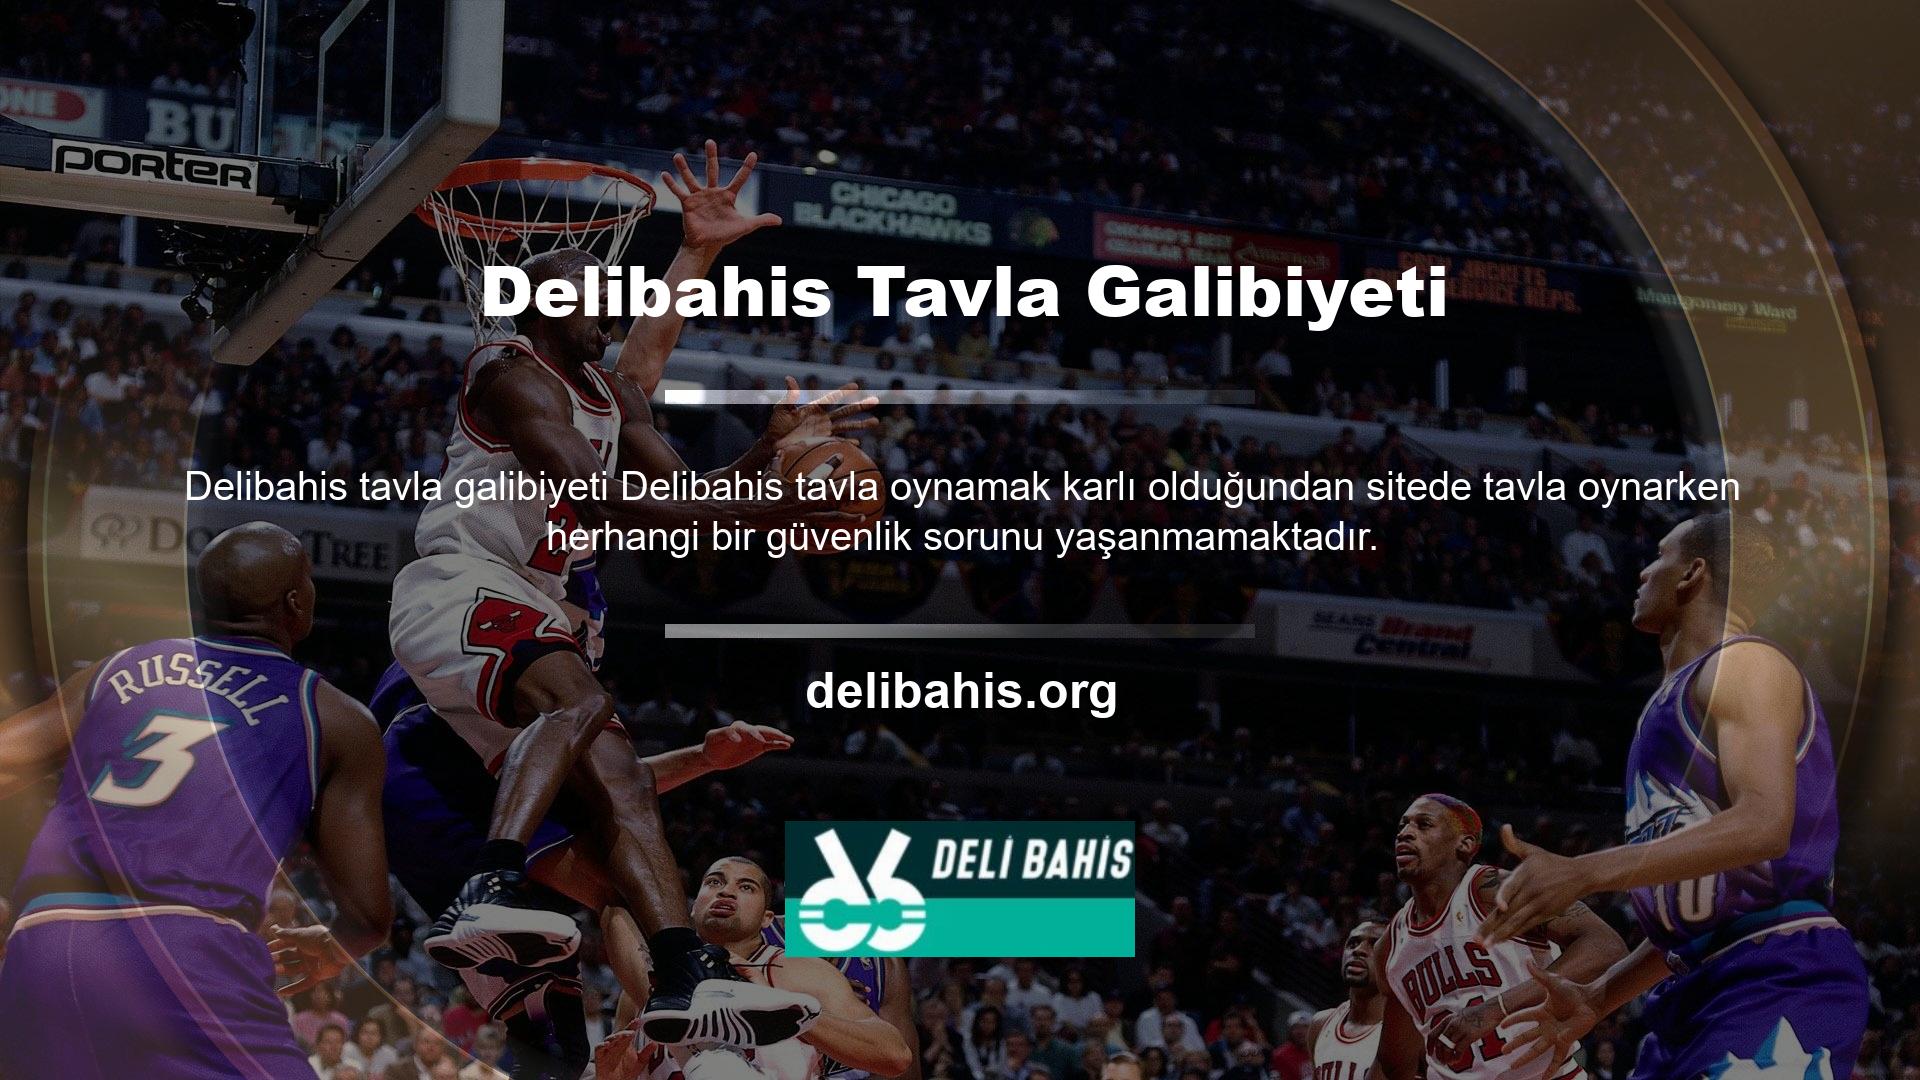 Delibahis web sitesinde çeşitli içerikler bulunmaktadır